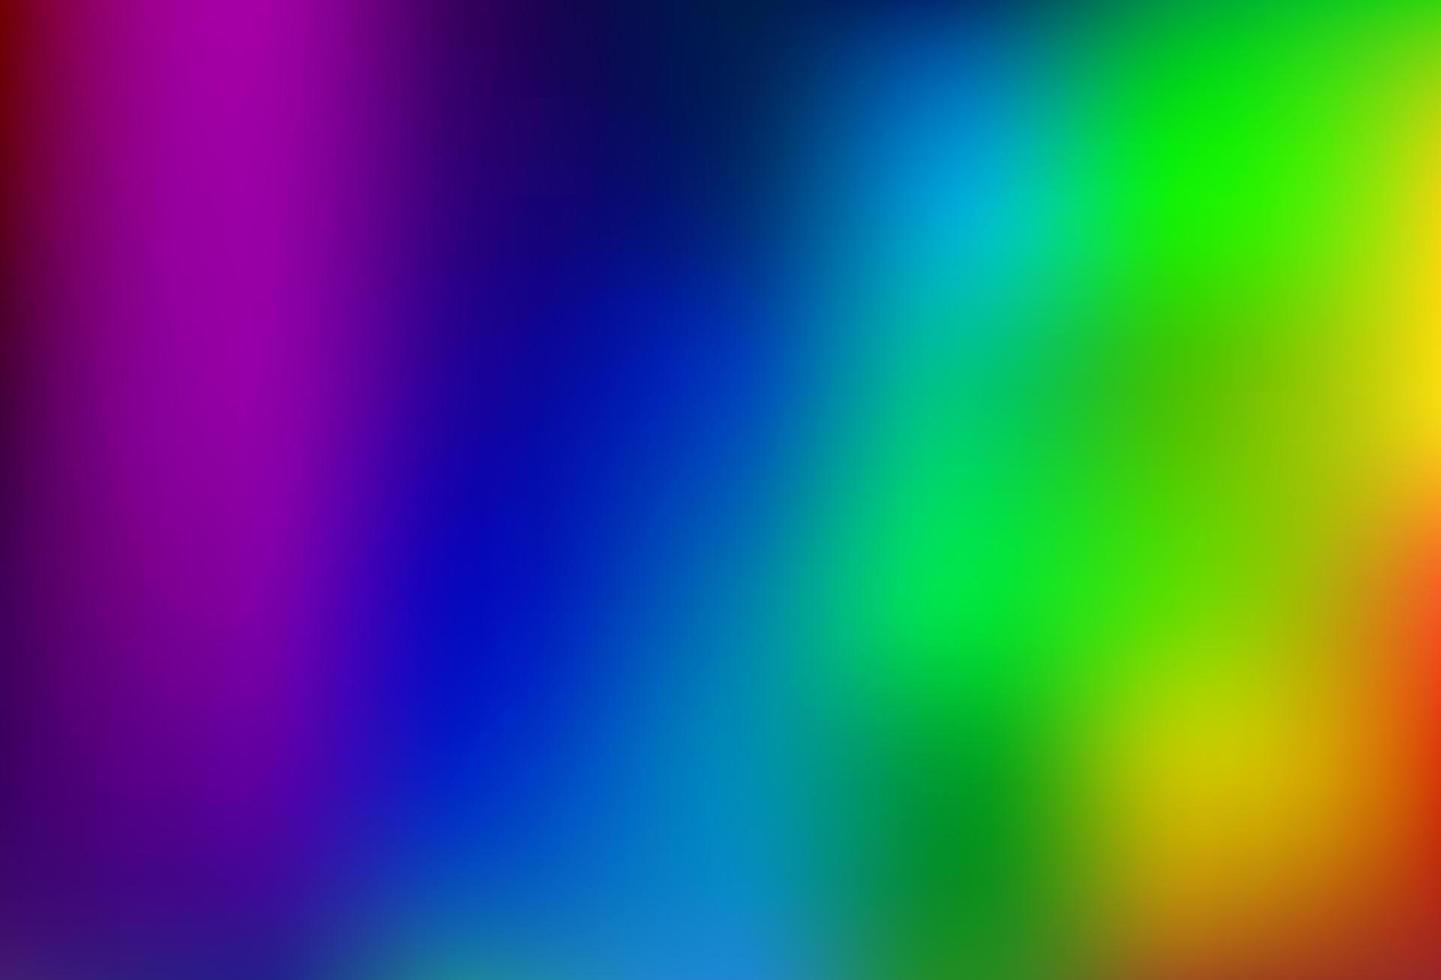 multicolore clair, bokeh vectoriel arc-en-ciel et motif coloré.